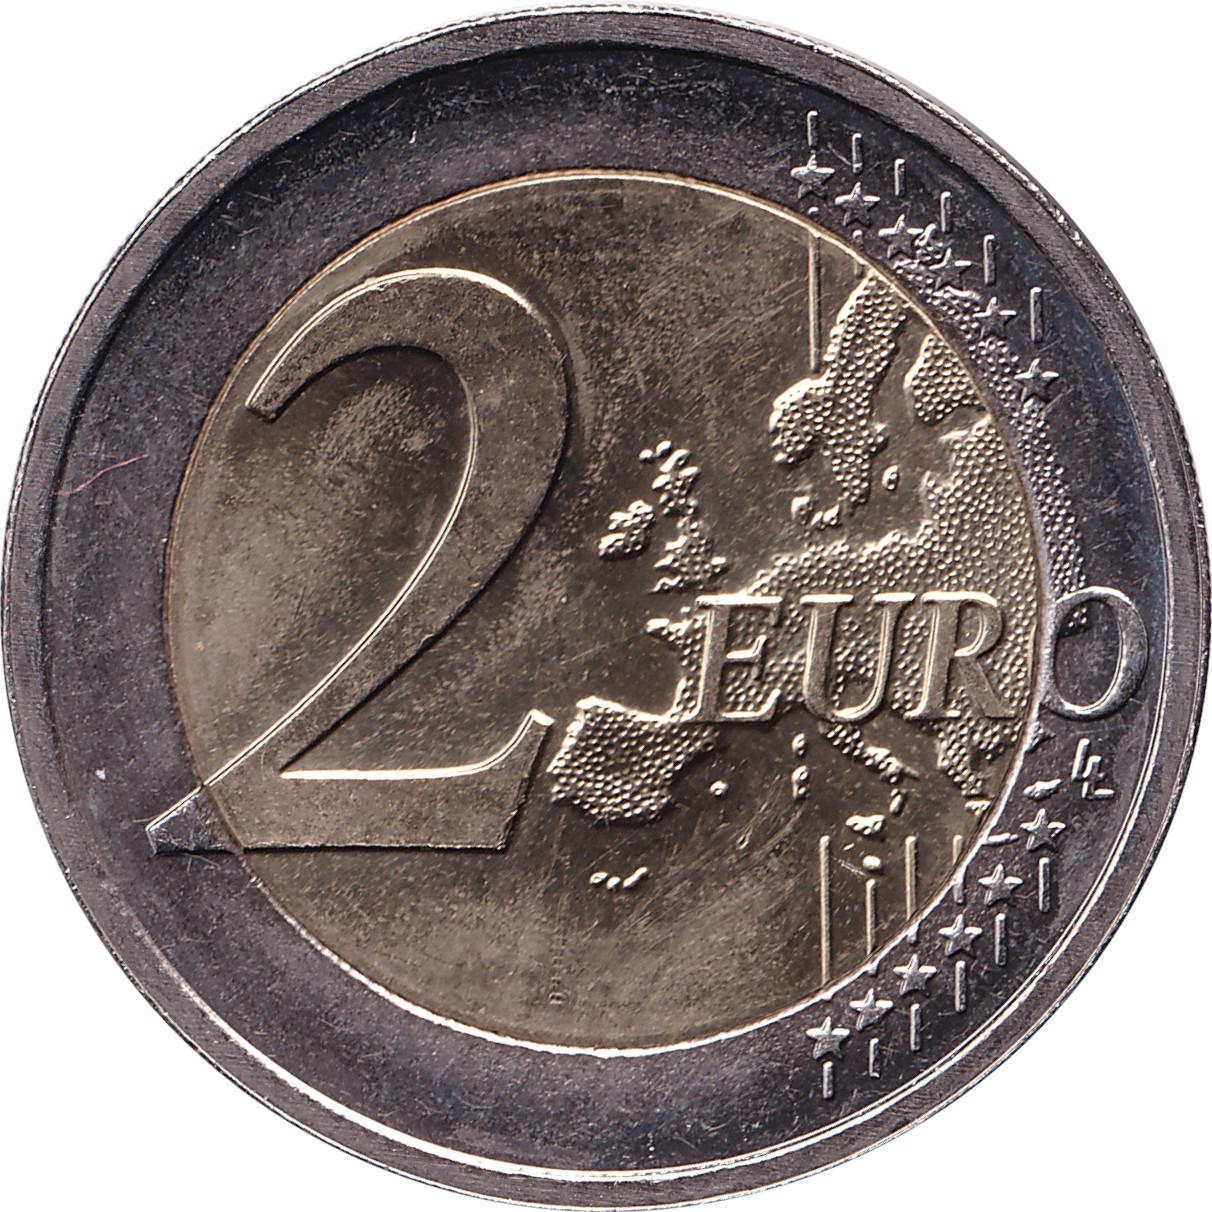 2 euro - Mise en circulation de l'Euro - Luxembourg